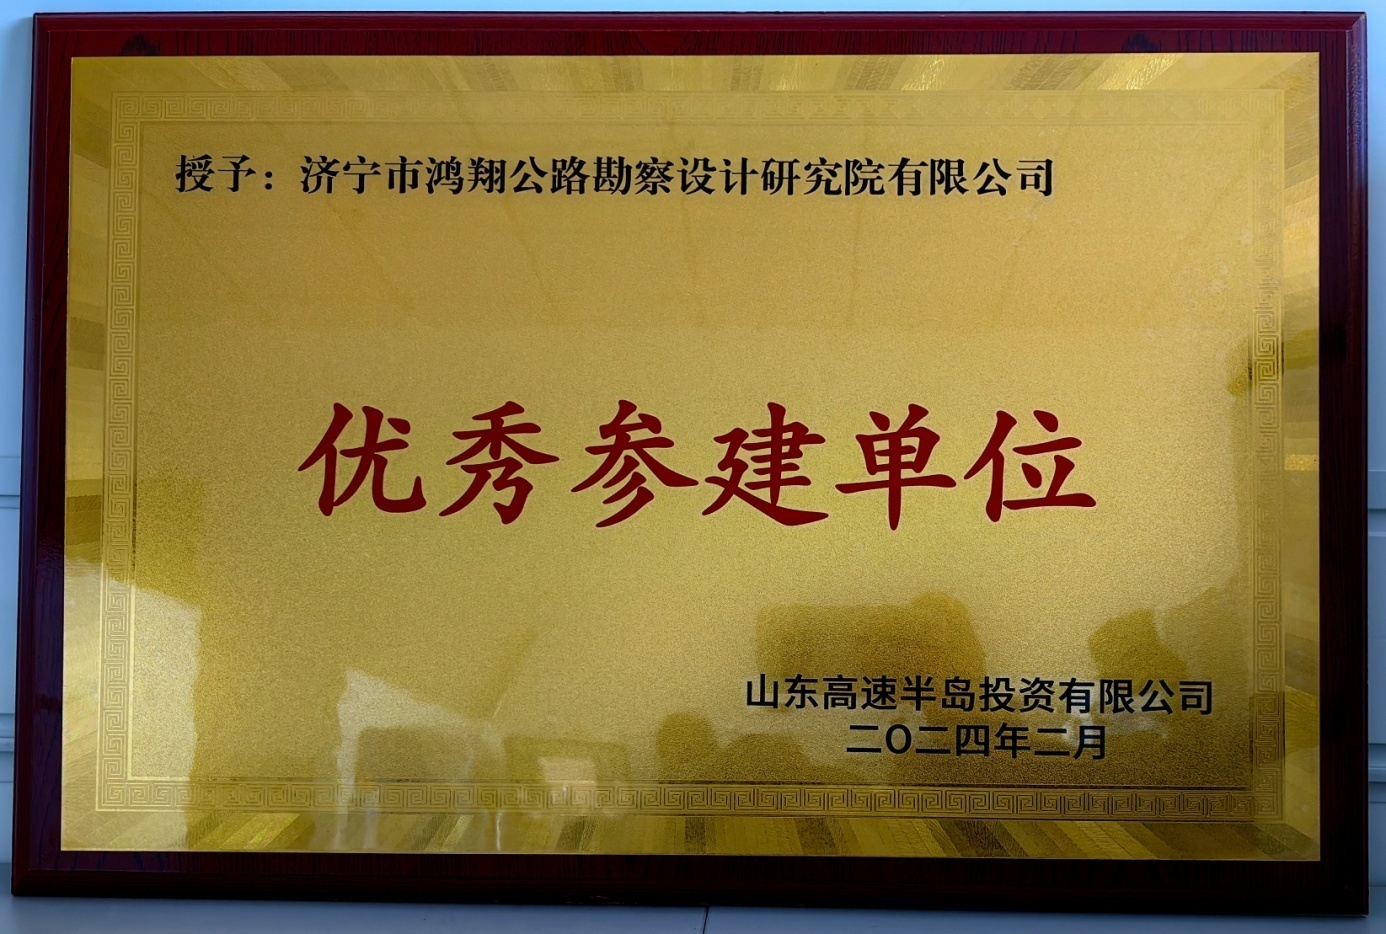 济宁市鸿翔公路勘察设计研究院有限公司 喜获“优秀参建单位”荣誉称号